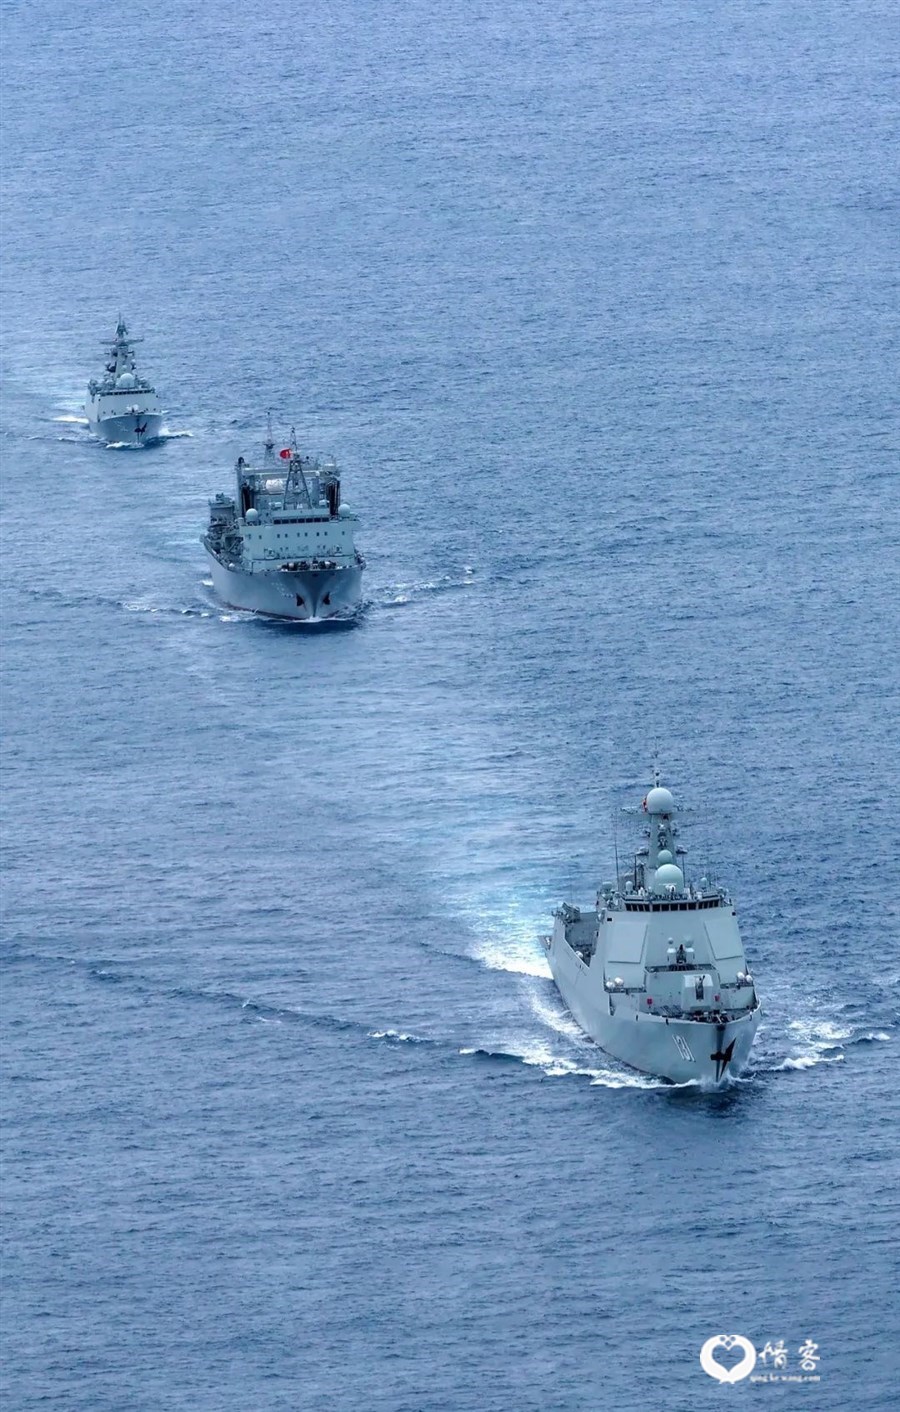 ▲ 中国海军亚丁湾护航编队正在行进 。图/视觉中国